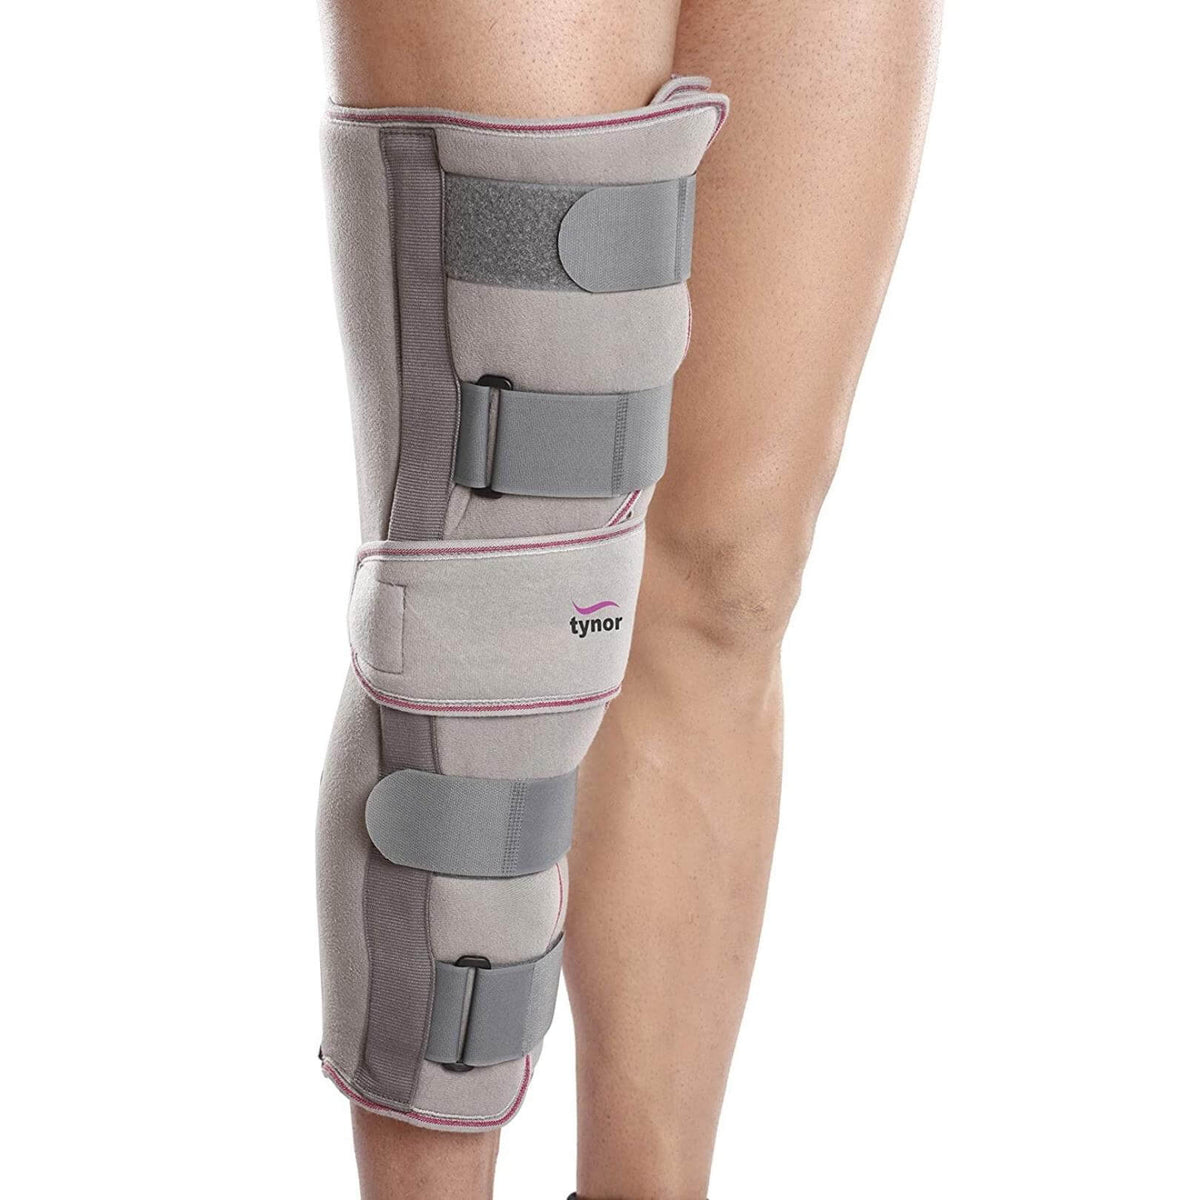 Premium Knee Immobiliser 48cm long to immobilise the knee or leg-1